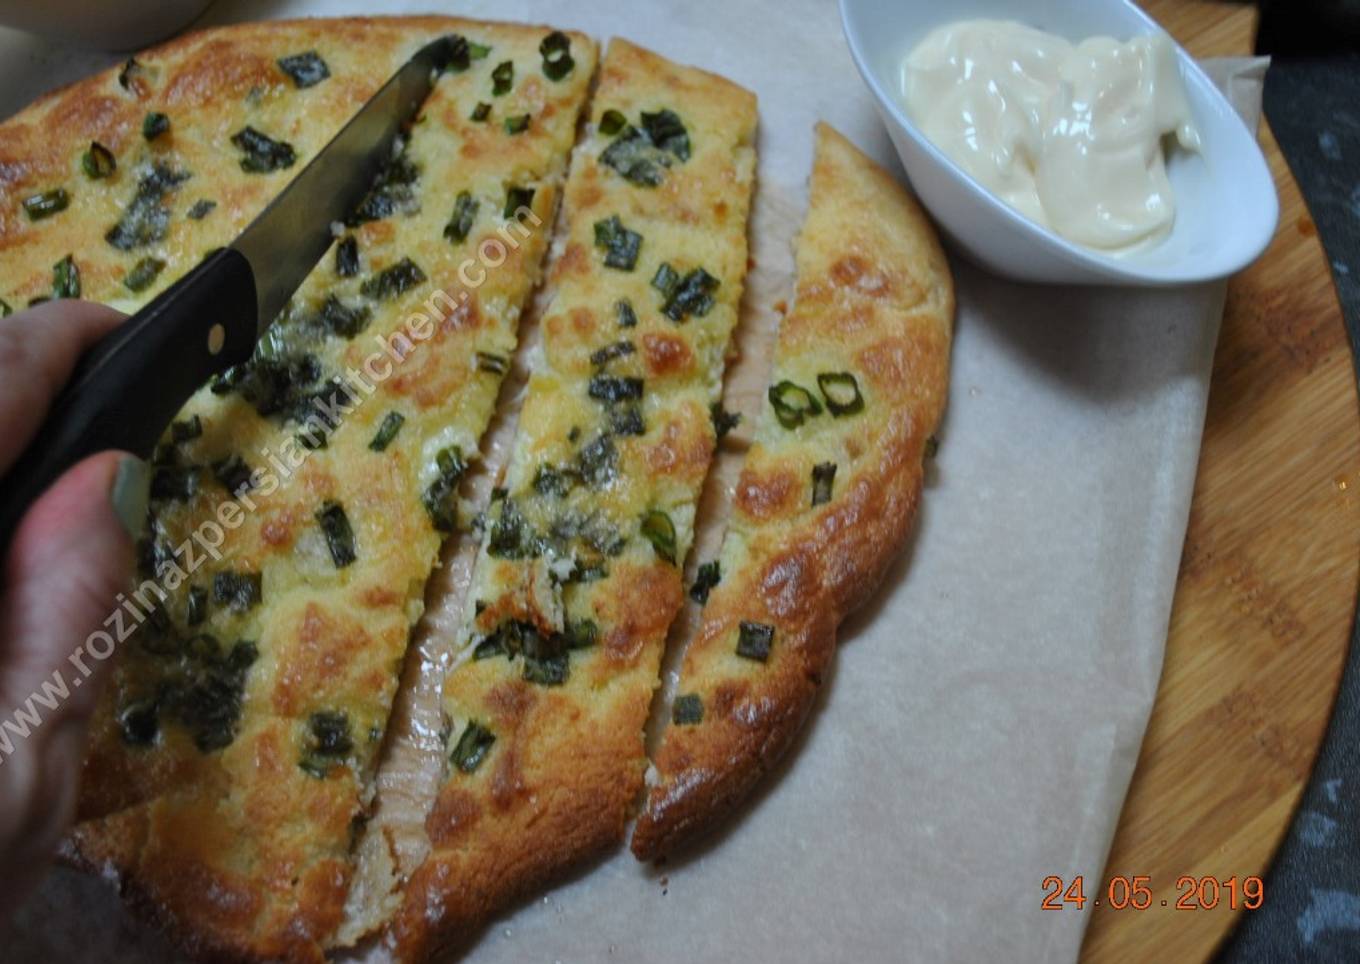 Keto Garlic Bread with almond flourÂ Â Ù†Ø§Ù† Ø³ÛŒØ± Ø¨Ø§ Ø¢Ø±Ø¯ Ø¨Ø§Ø¯Ø§Ù…